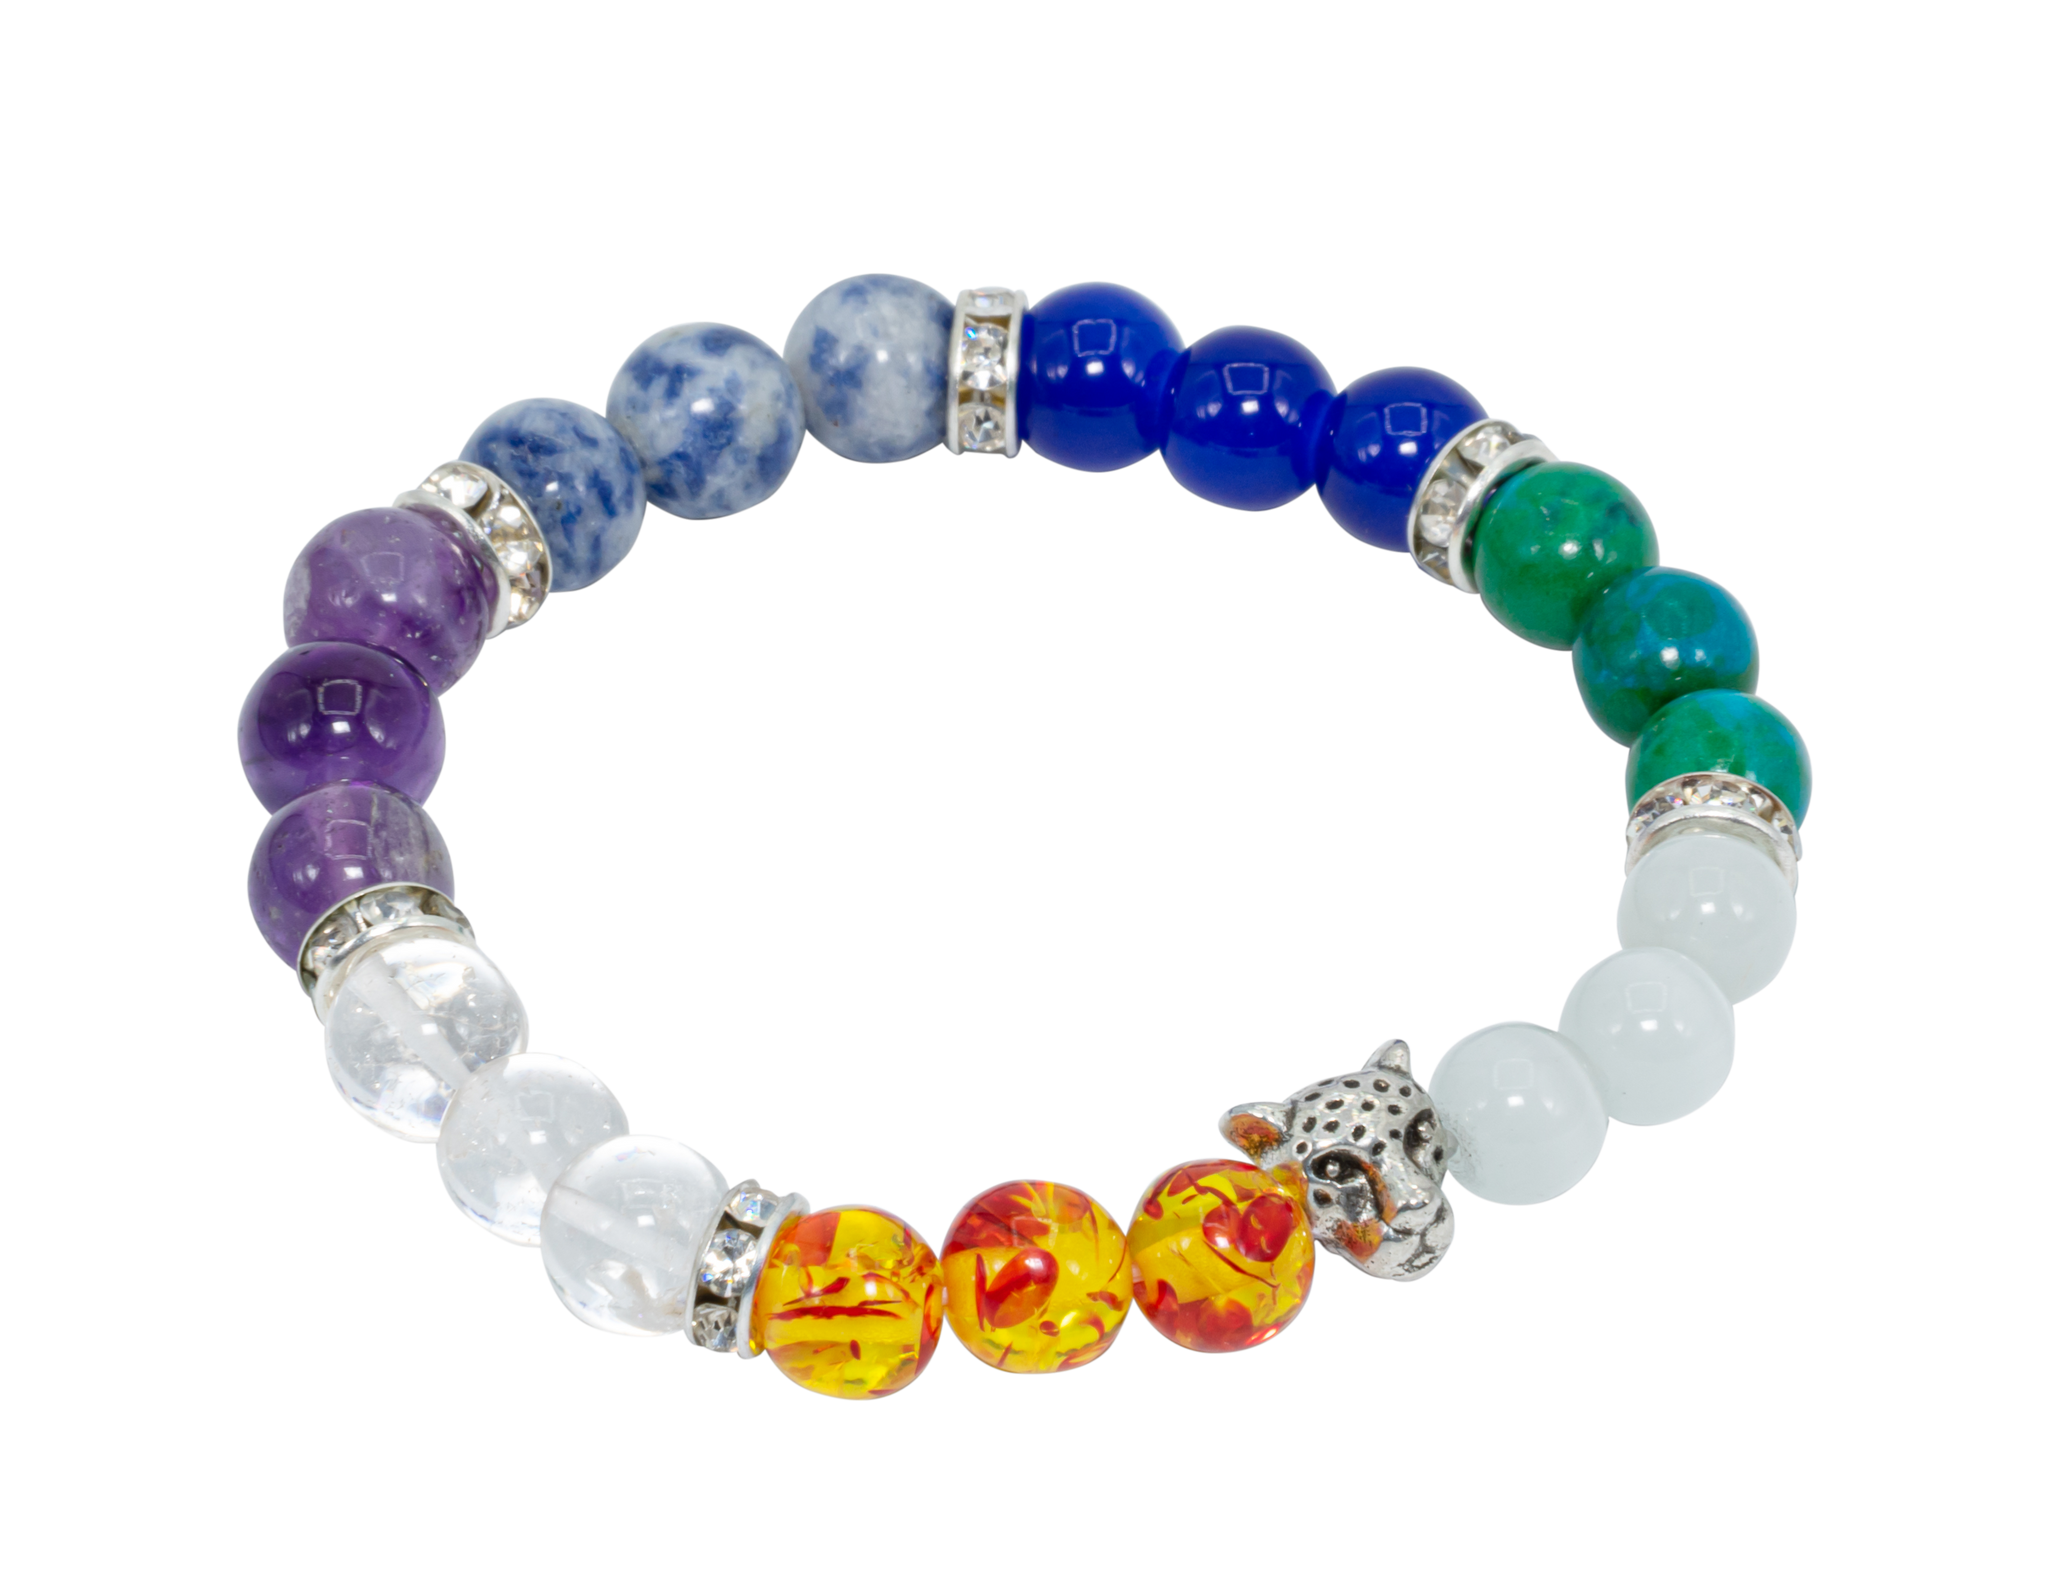 Amazon.com: AITELEI 7 Chakra Healing Bracelets with Real Stones Gemstone  Healing Chakra Bracelet Yoga Meditation Bracelets for Protection, Energy  Healing: Clothing, Shoes & Jewelry